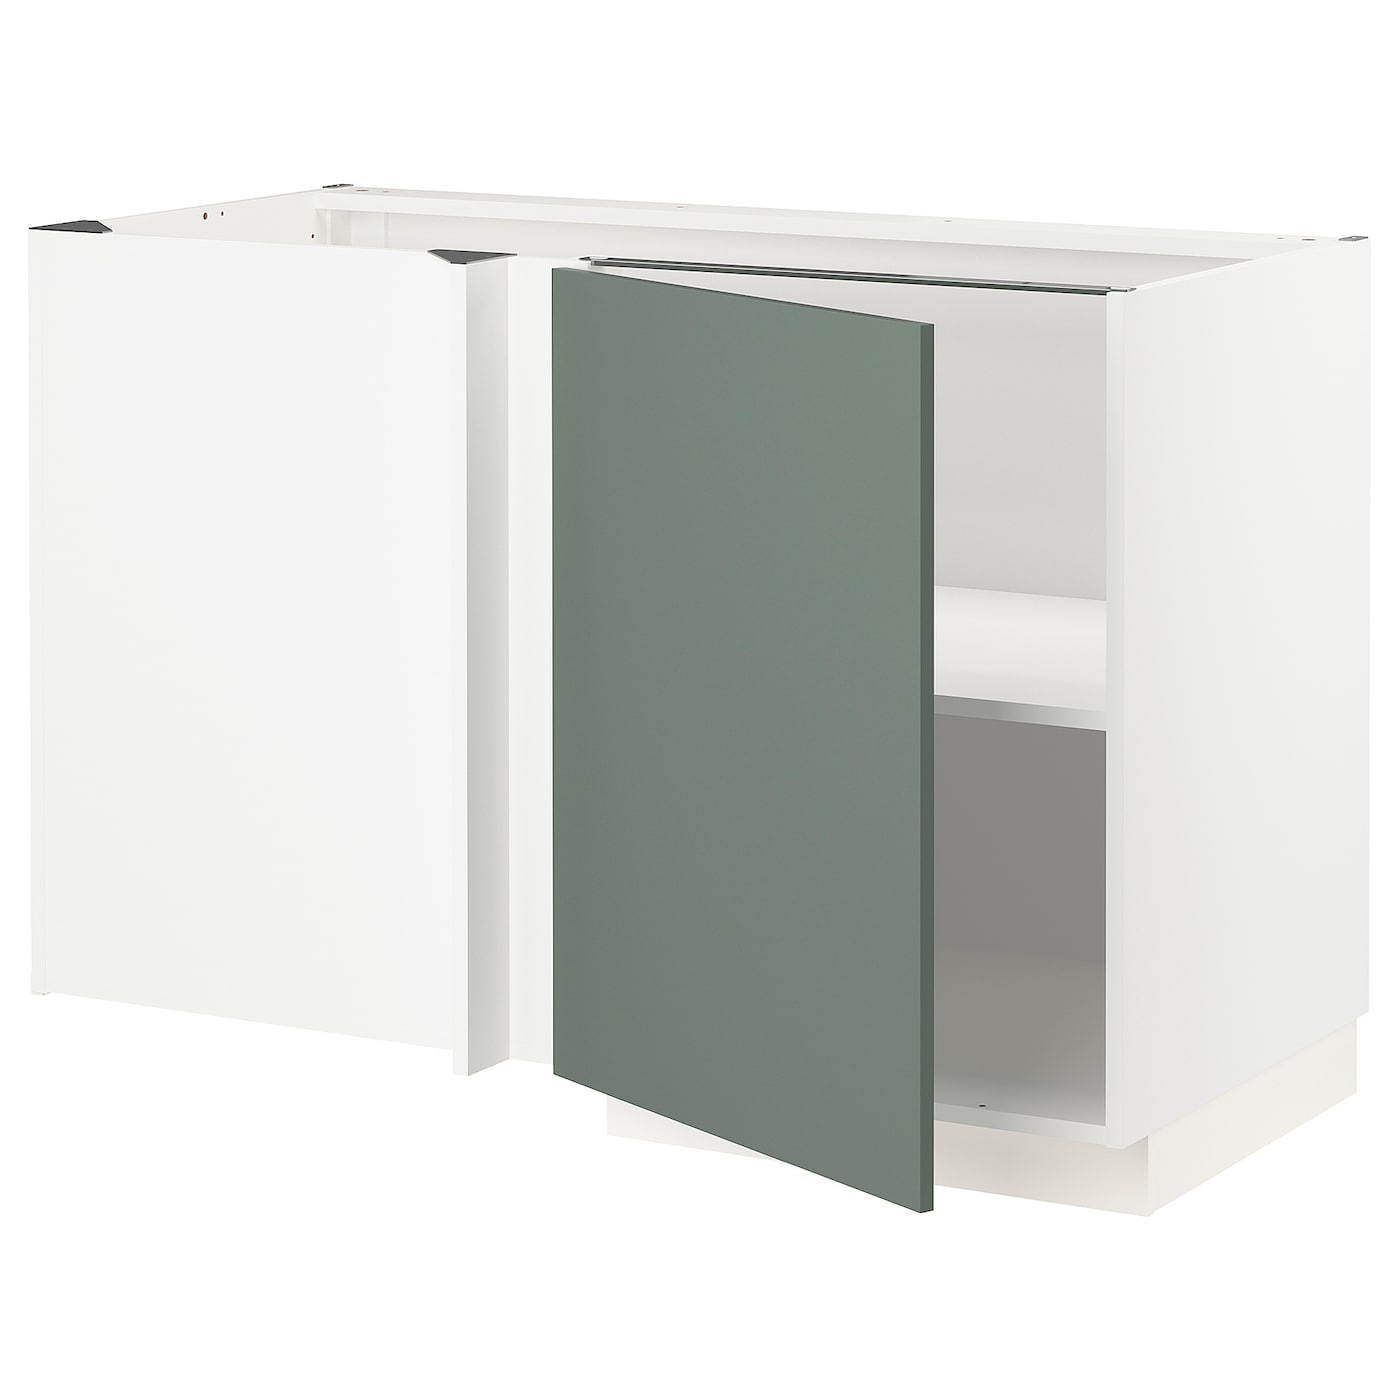 Угловой шкаф-тумба с полкой - IKEA METOD/МЕТОД ИКЕА, 128х68 см, белый/темно-зеленый